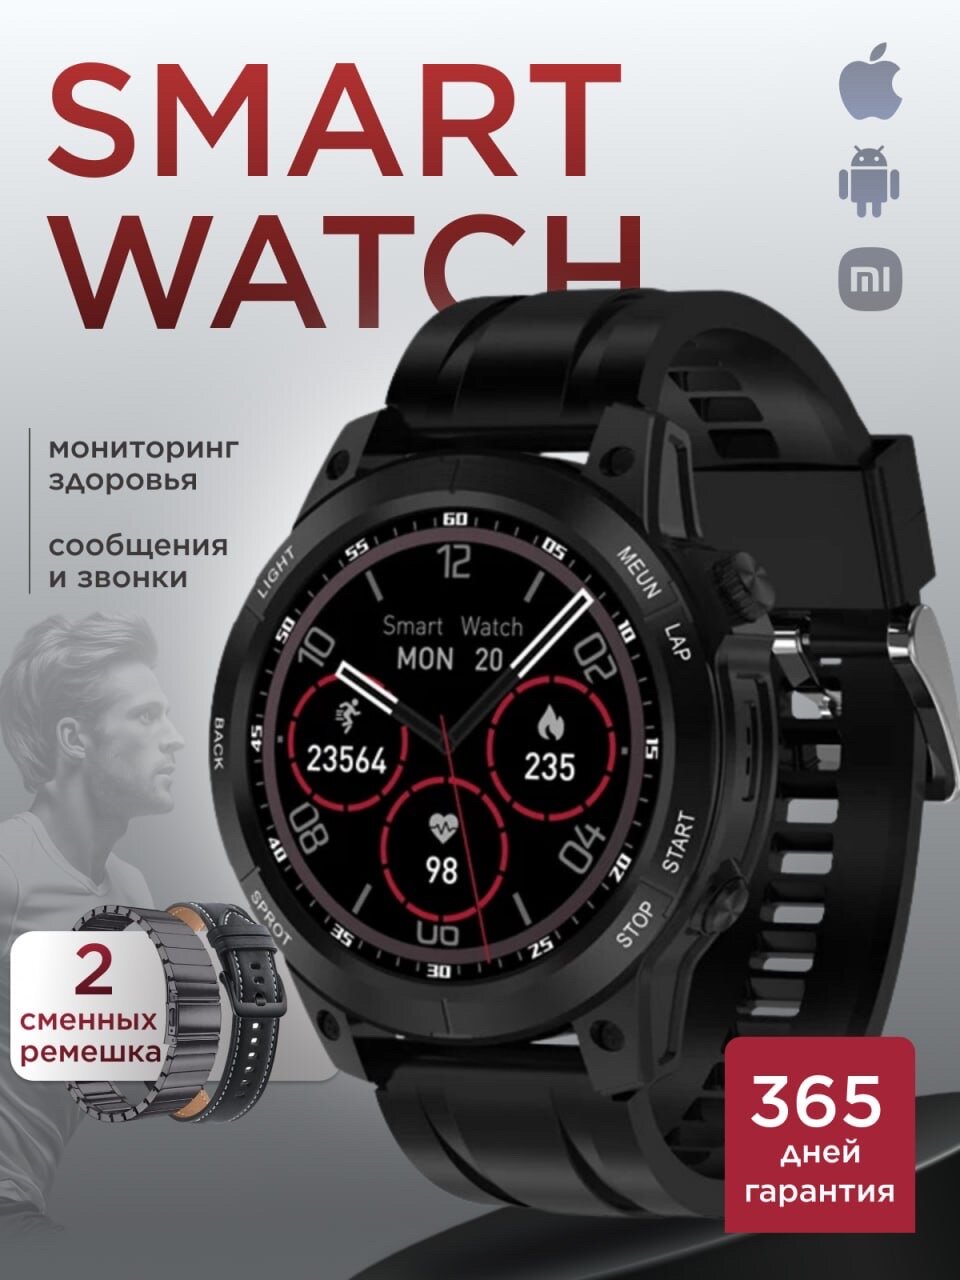 Смарт часы мужские наручные умные электронные черные круглые smart watch на руку для андроид iphone вотч водонепроницаемые спортивные сенсорные фитнес смартчасы